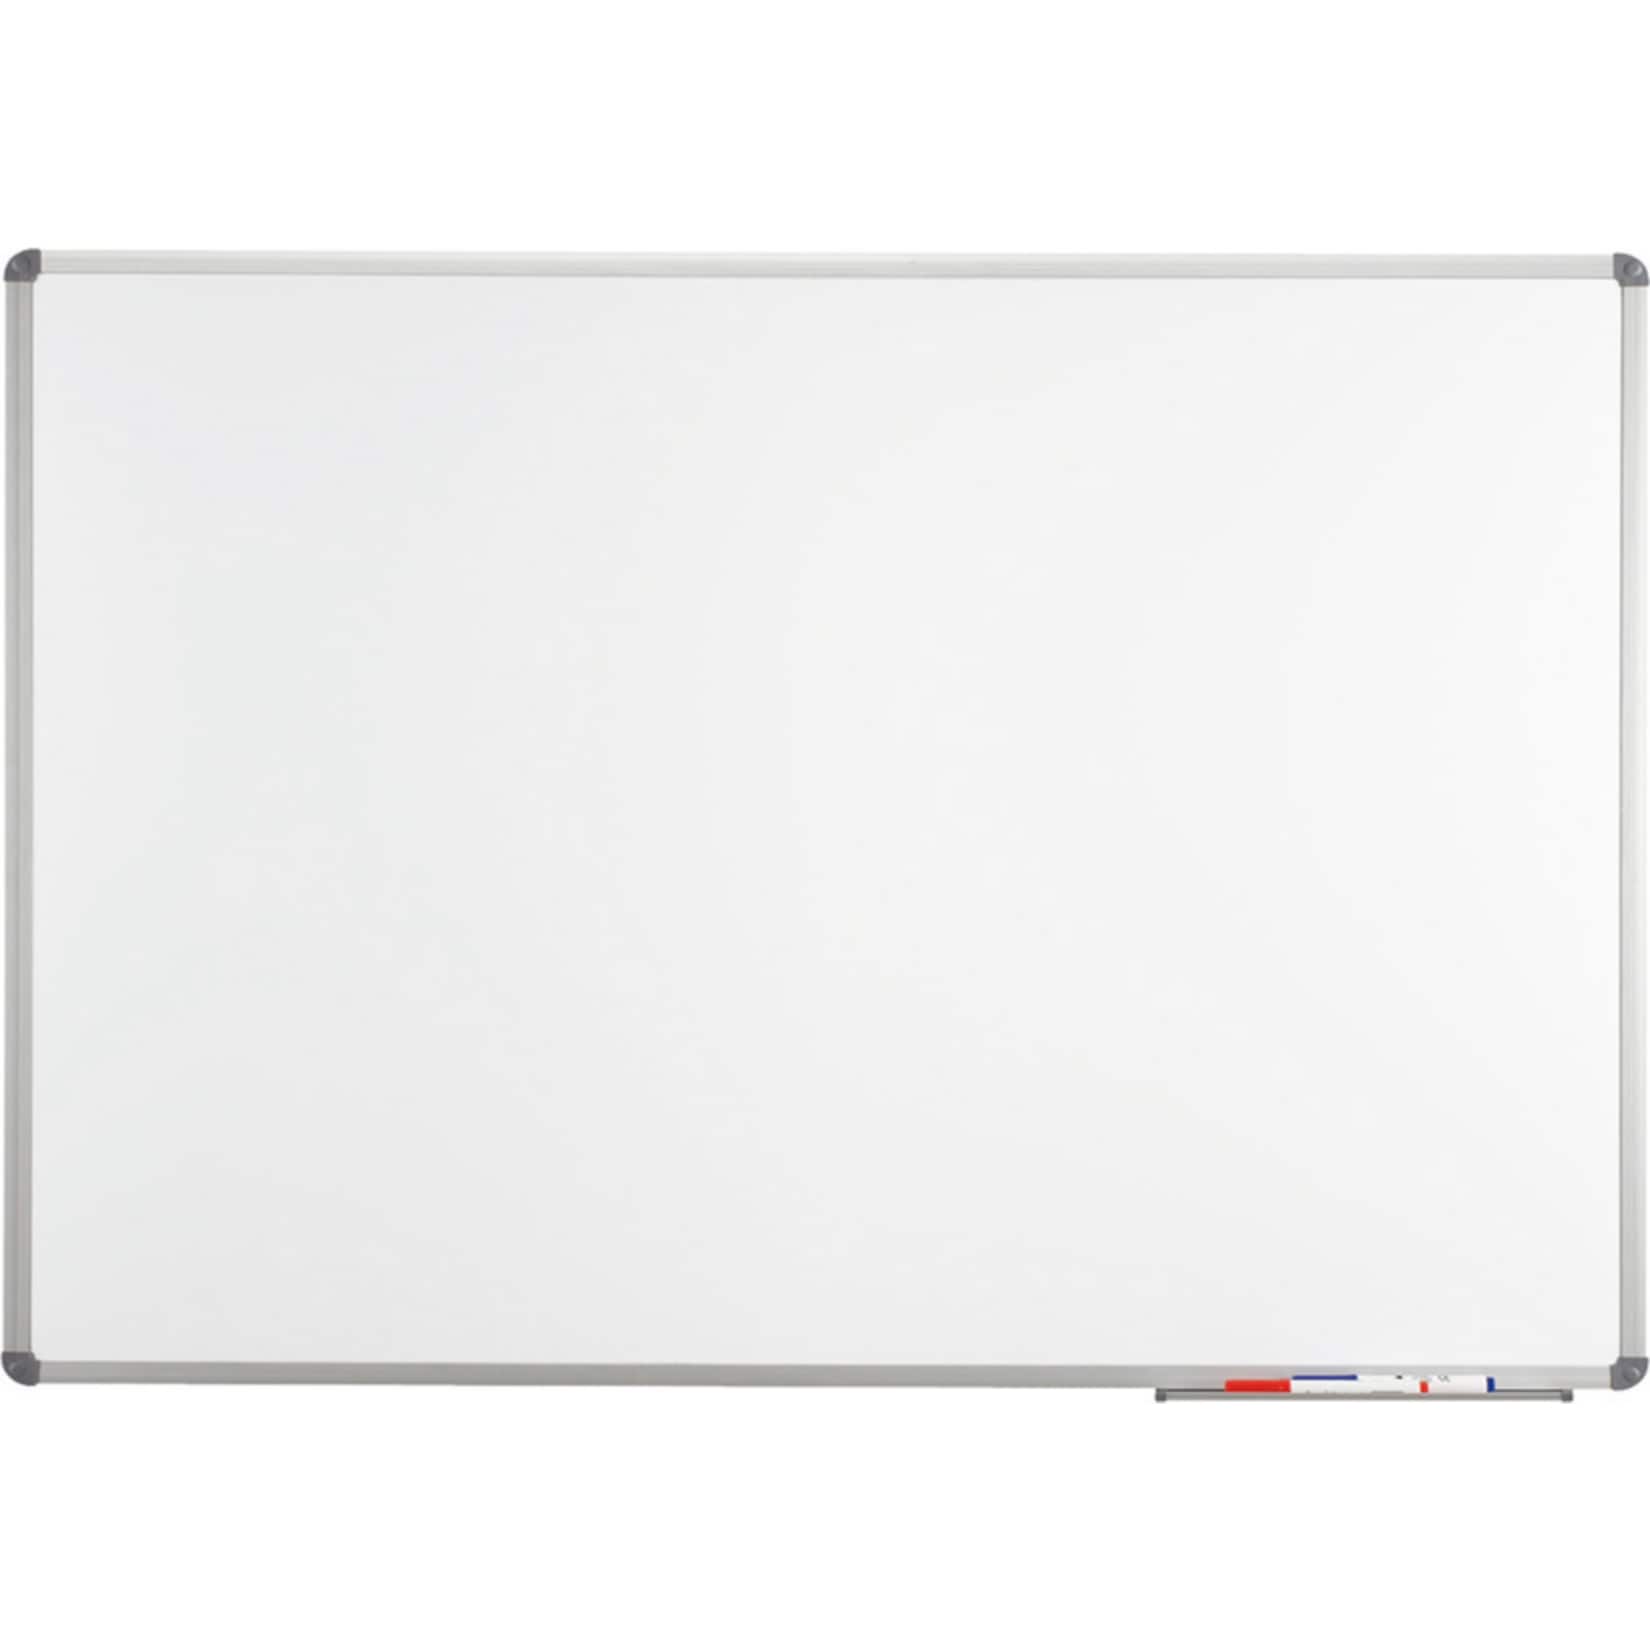 MAUL Whiteboard MAULstandard - 30 x 45 cm